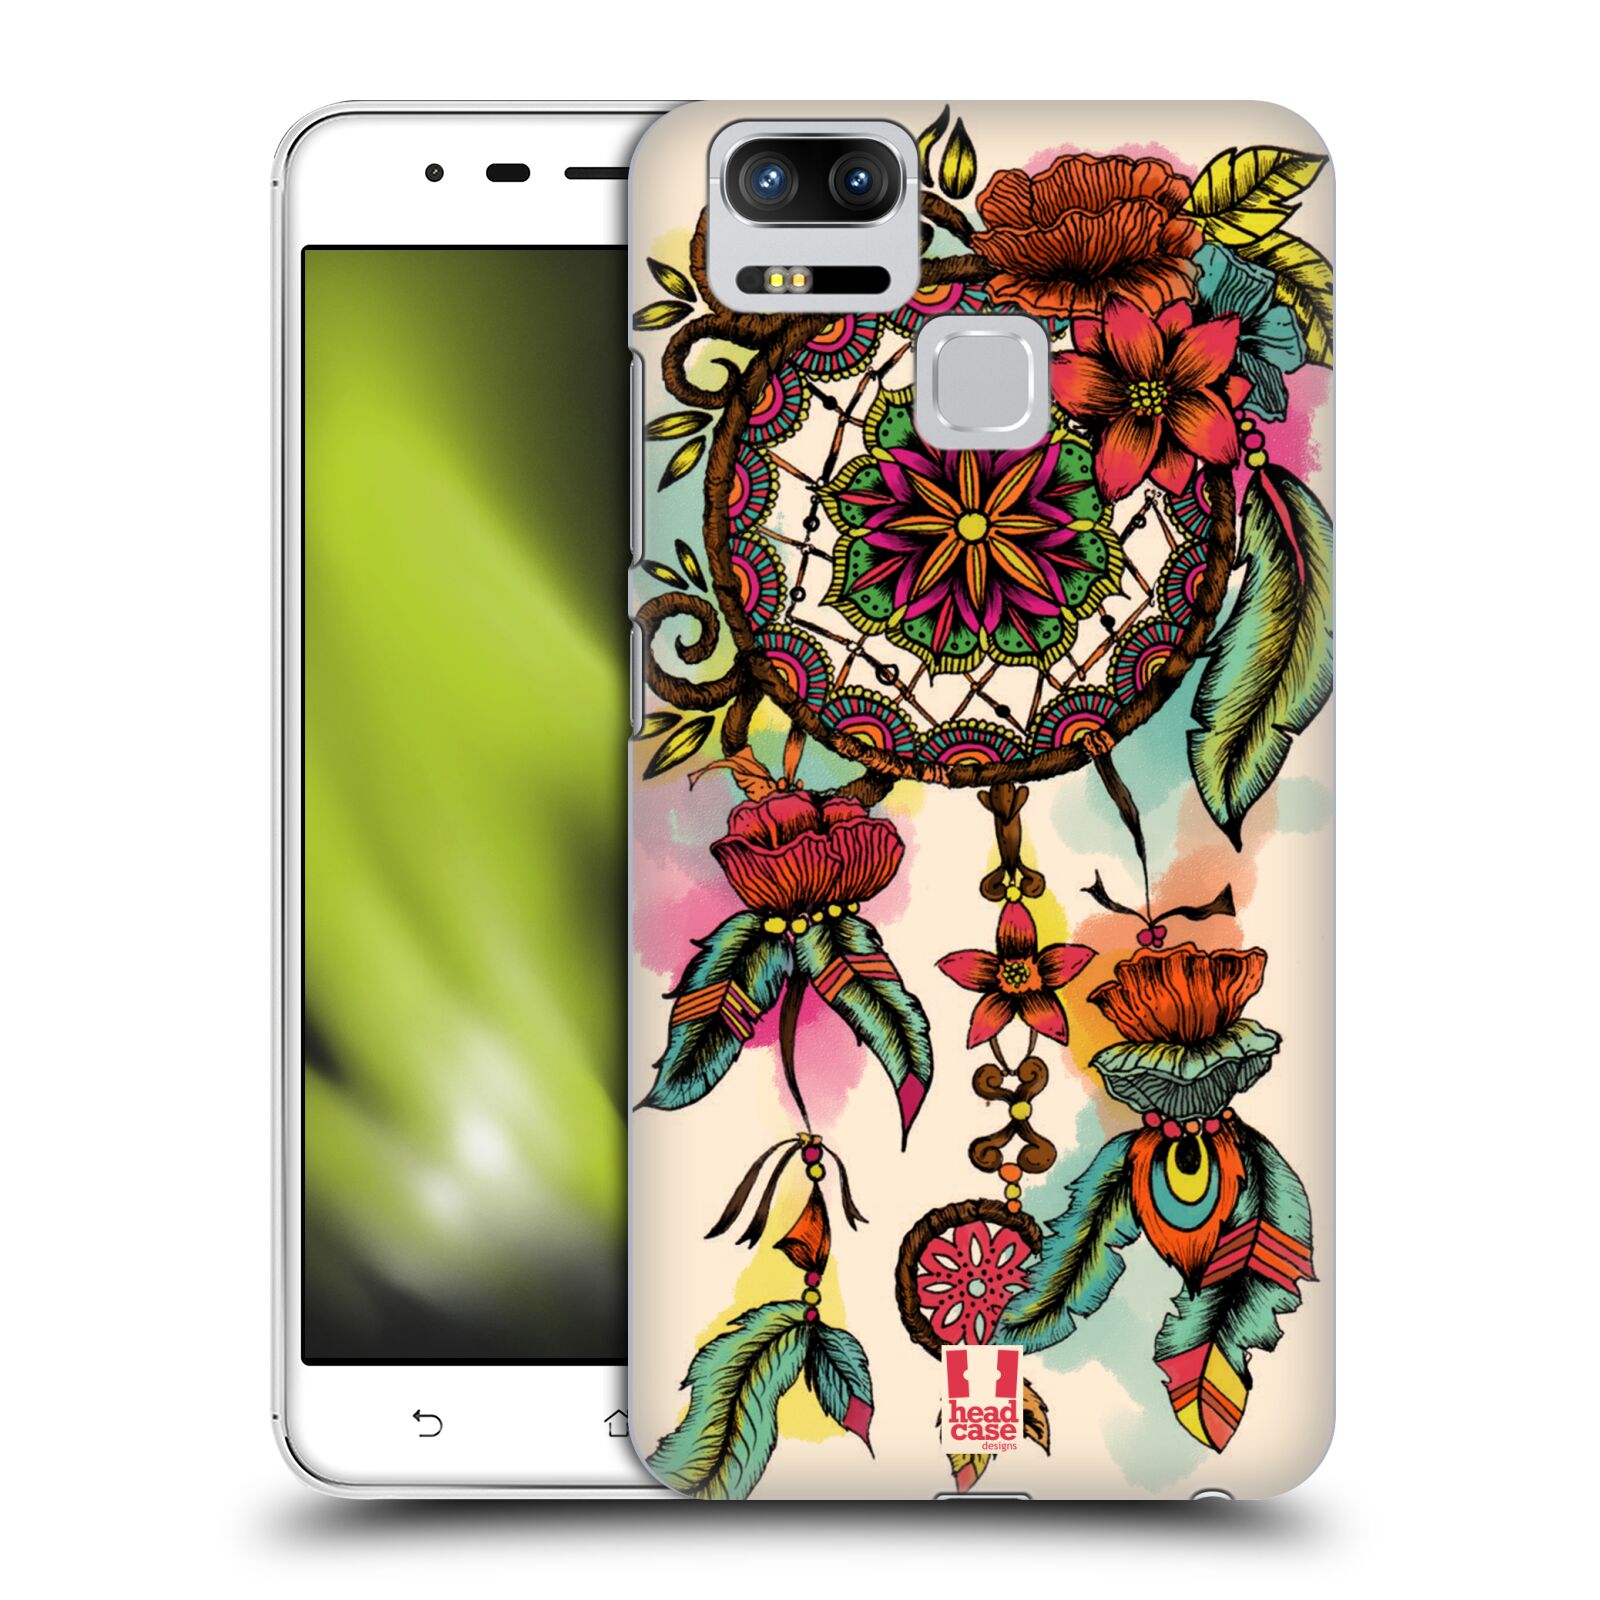 HEAD CASE plastový obal na mobil Asus Zenfone 3 Zoom ZE553KL vzor Květy lapač snů FLORID